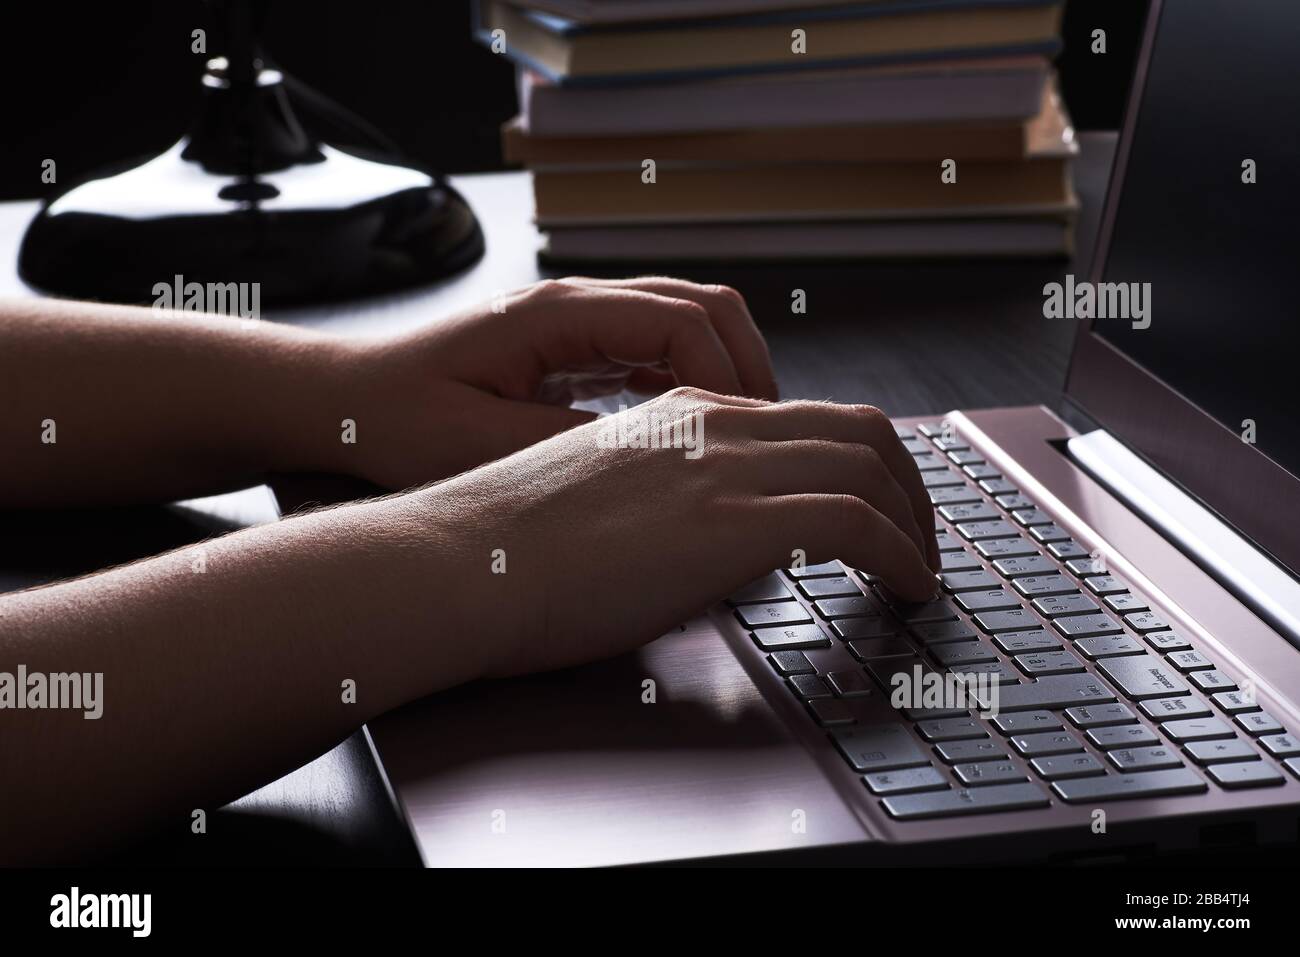 Stillleben in der Nacht unter Lampenlicht. Hände junger Frau, die freiberuflich schreibt, auf der Tastatur des Laptops. Stockfoto